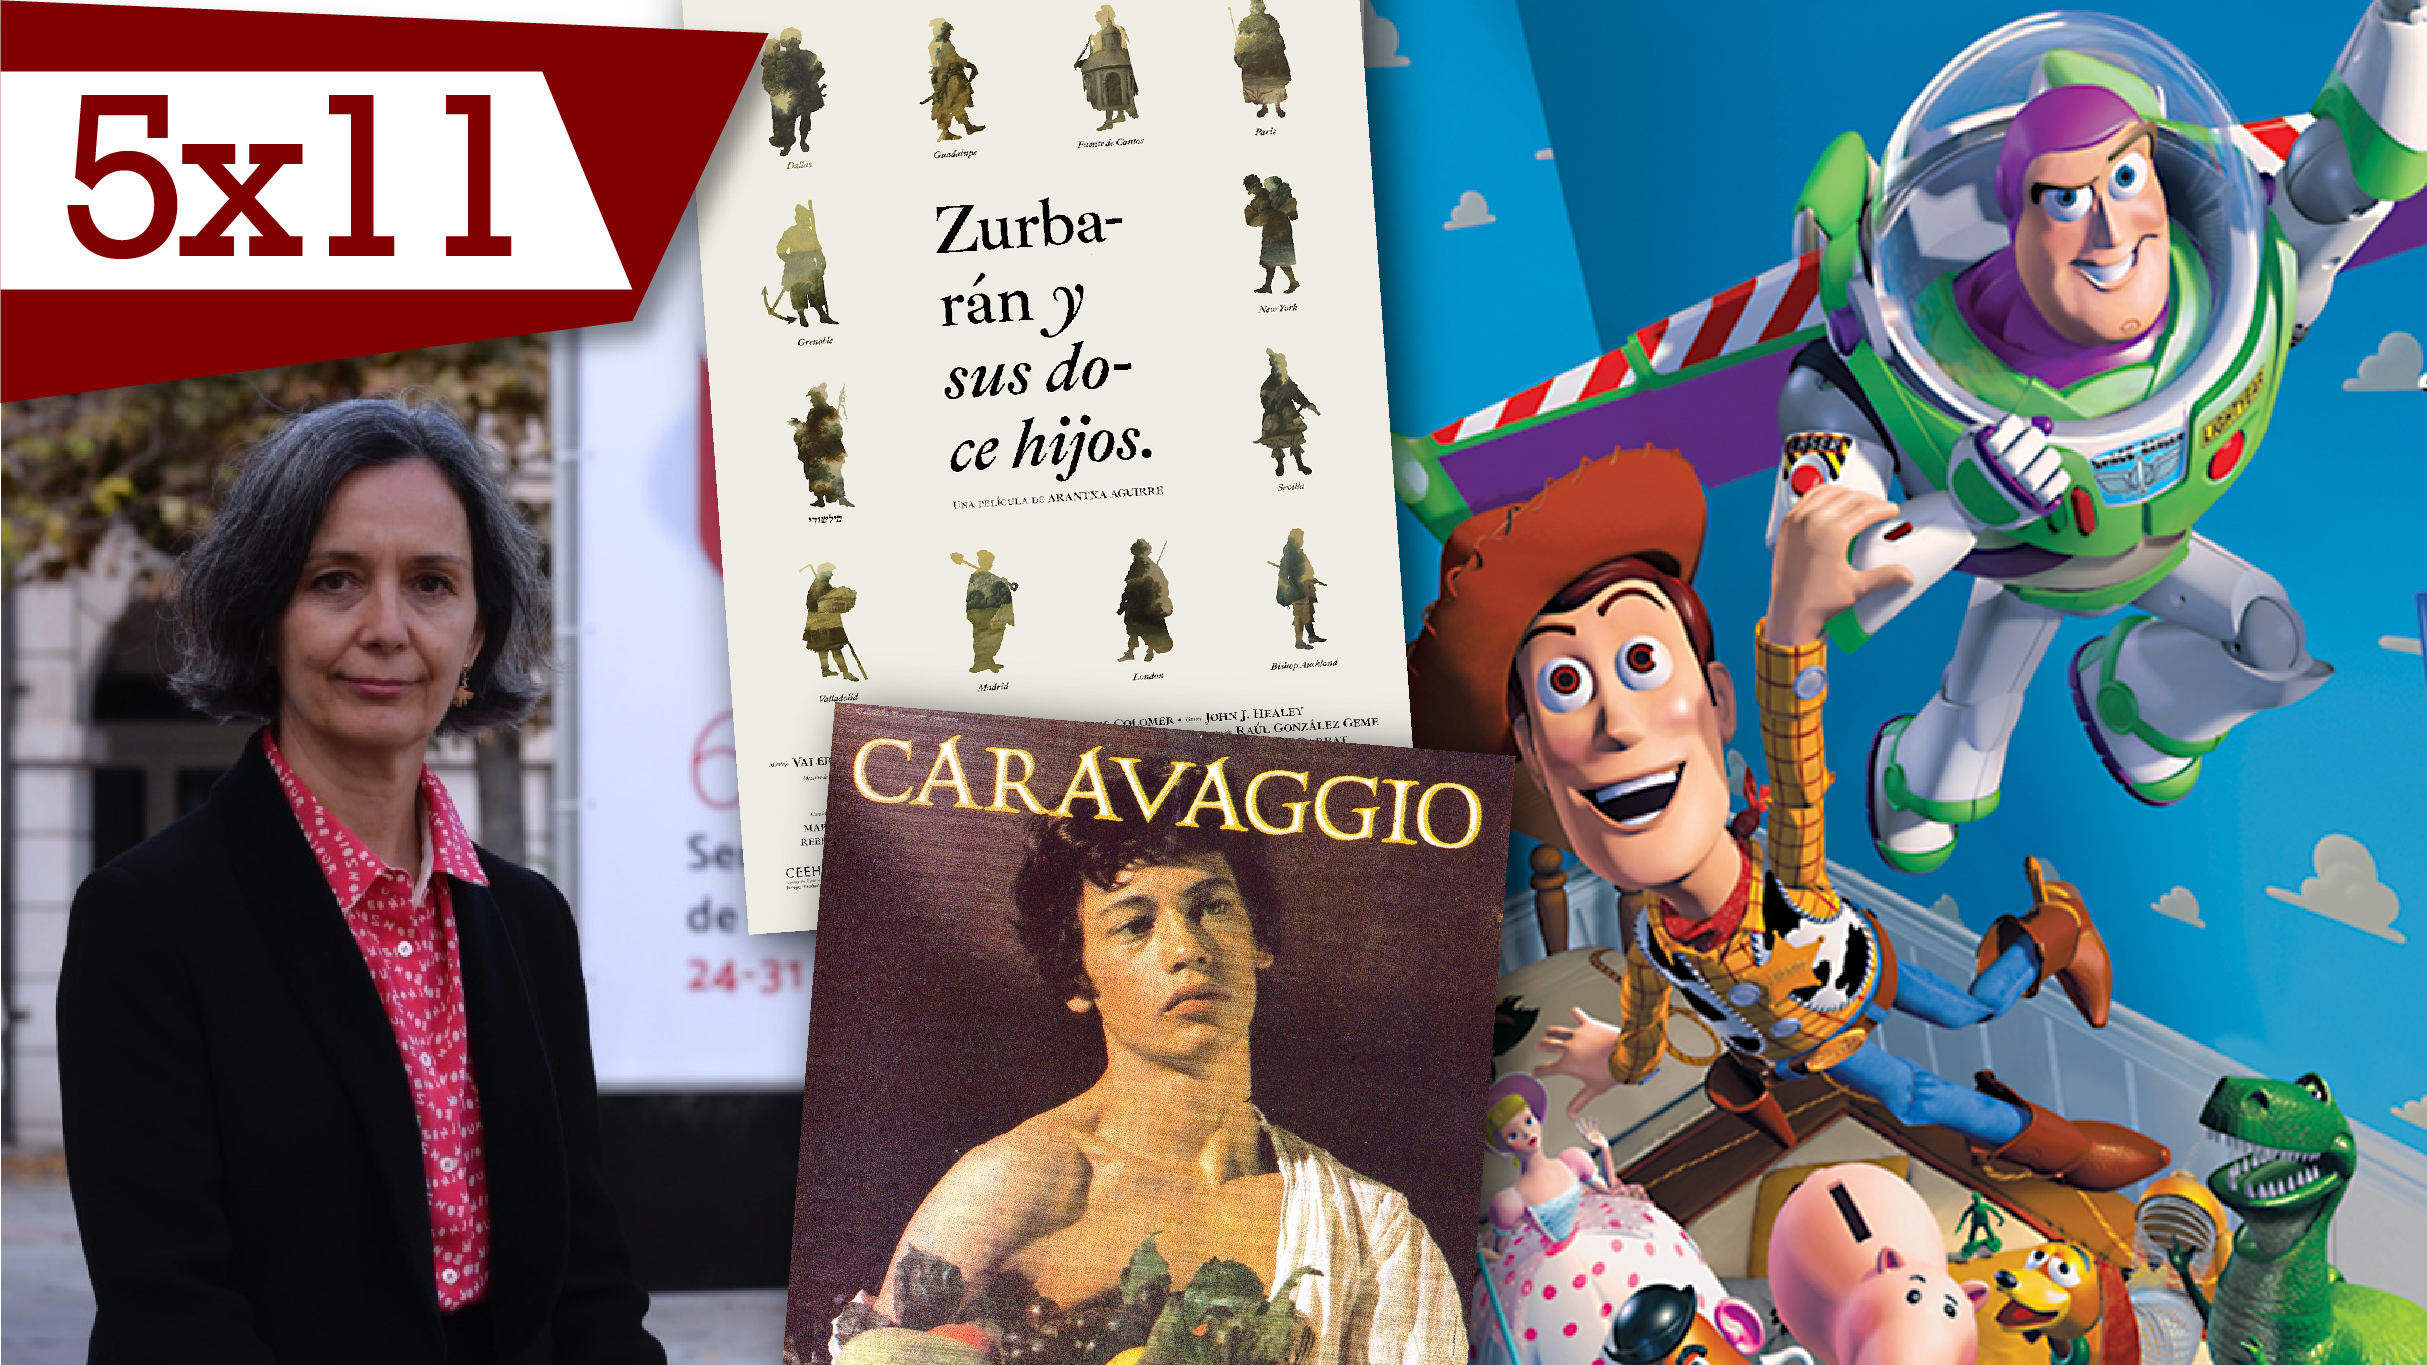 Arantxa Aguirre, Caravaggio y 'Toy Story' (27/11/20)